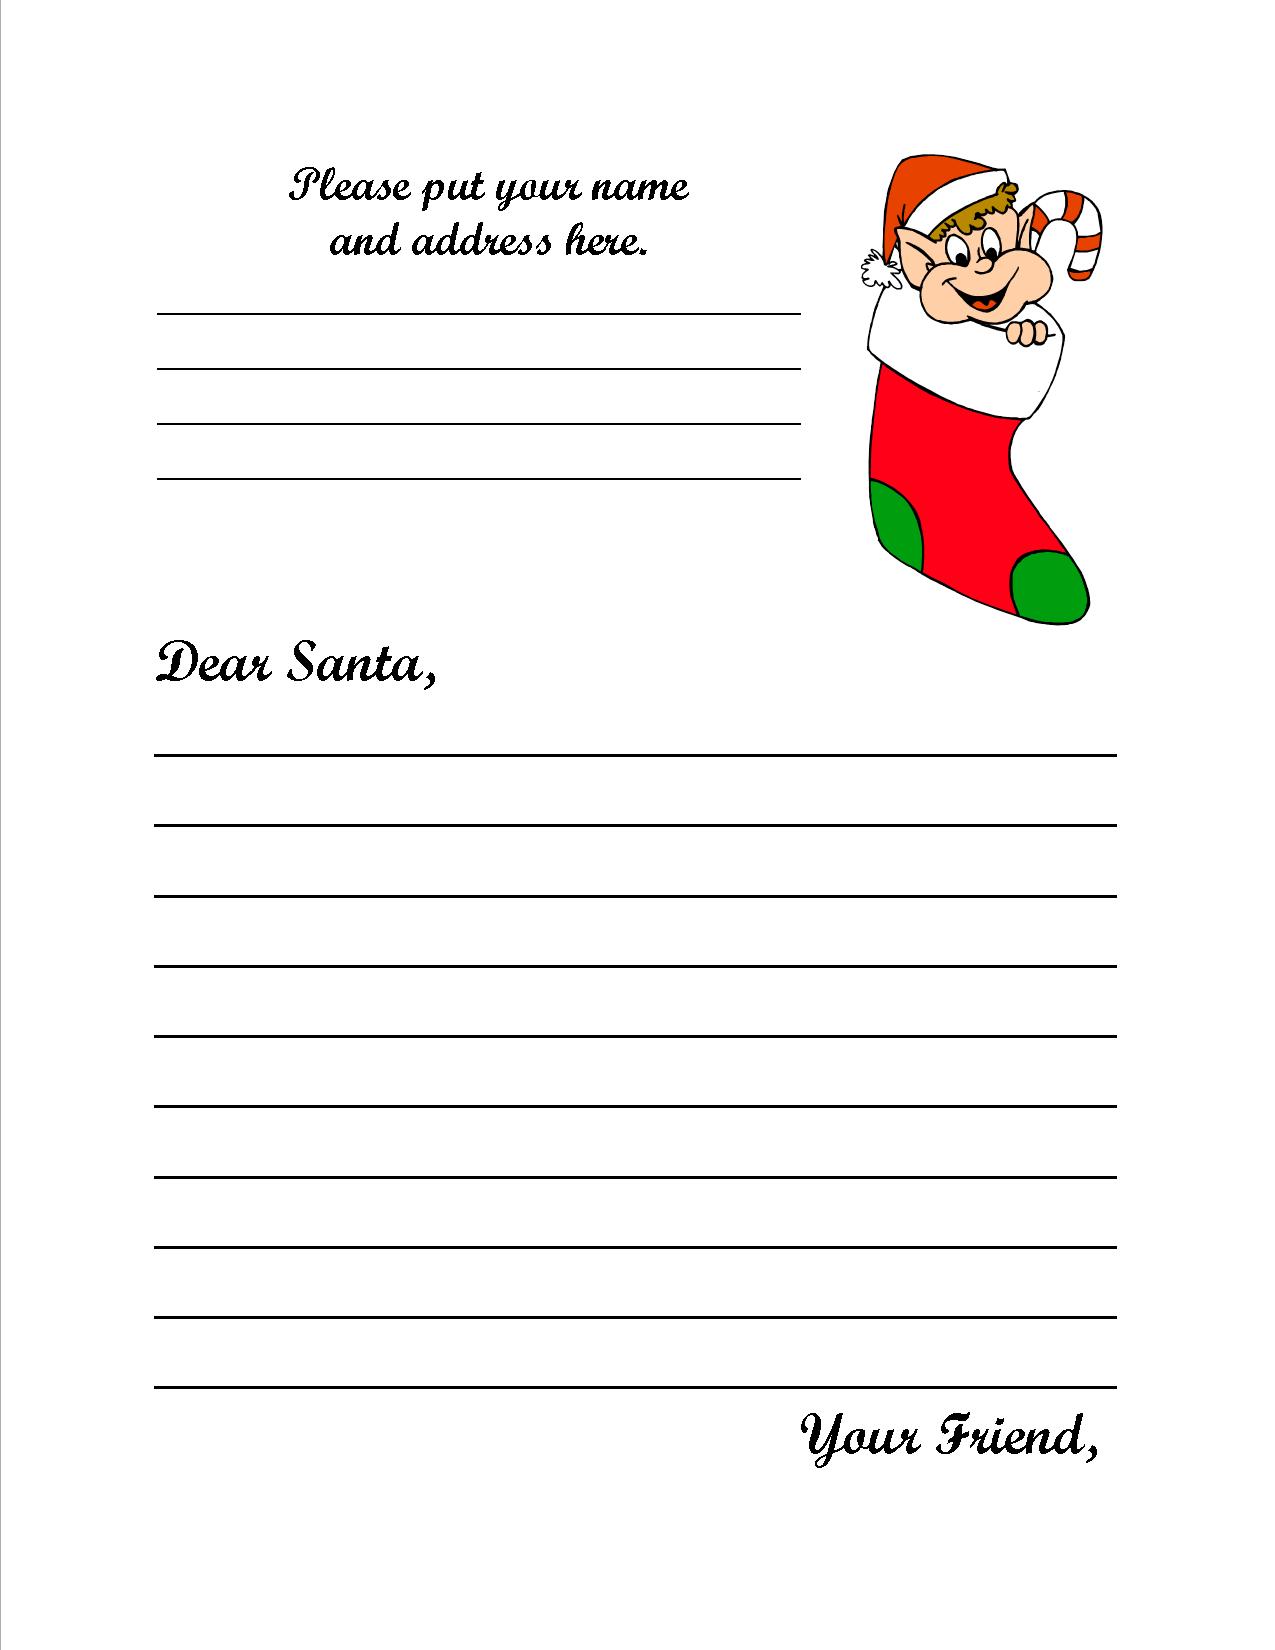 Write to Santa | Santa Claus Museum